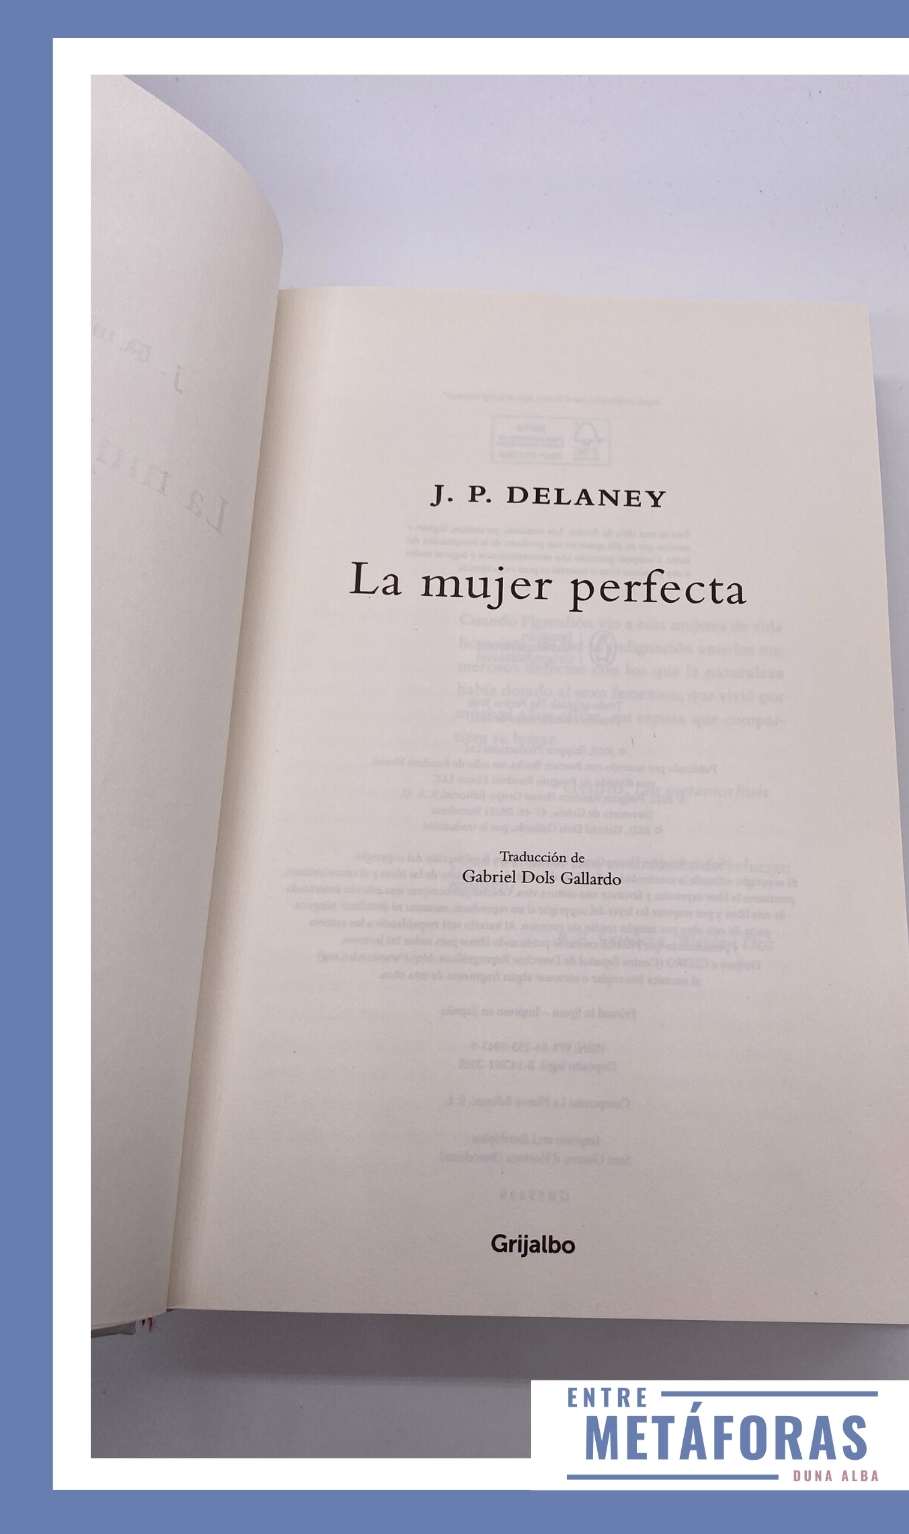 La mujer perfecta, de J.P. Delaney